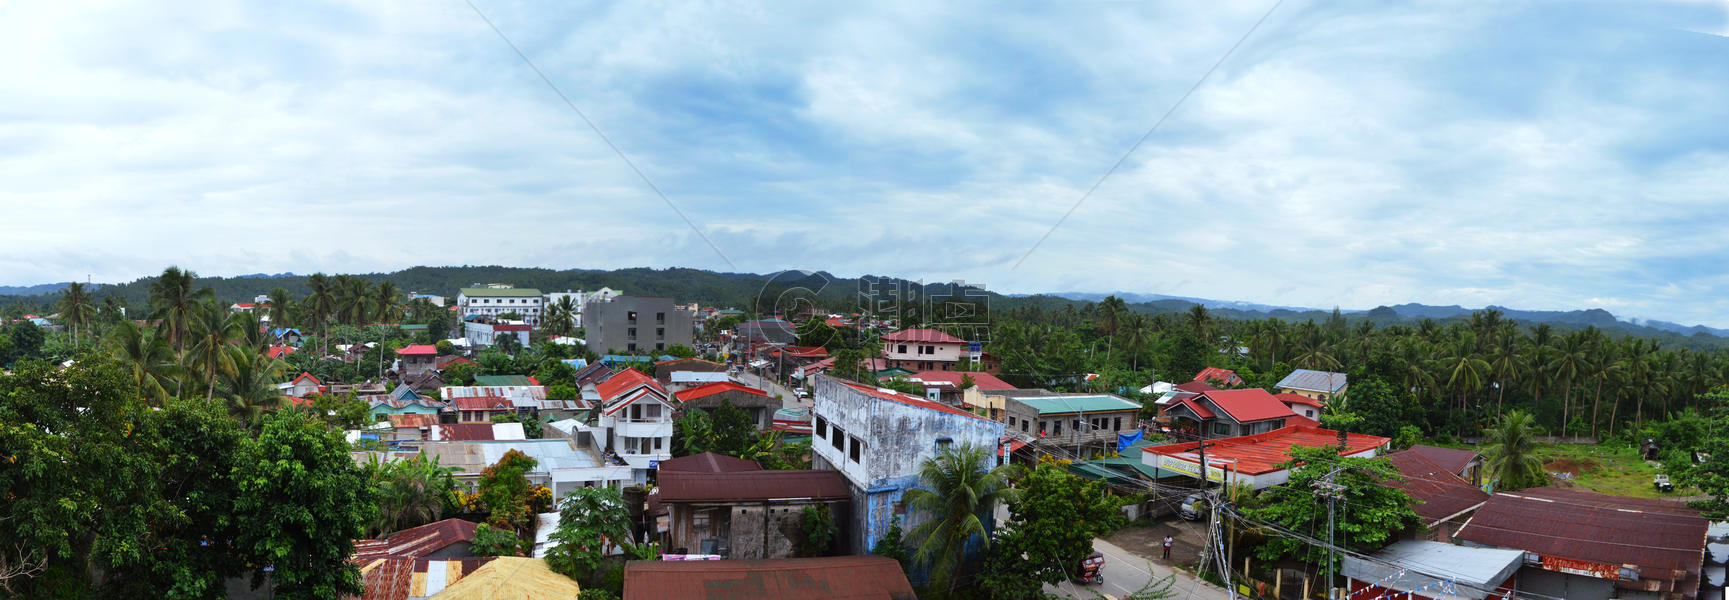 菲律宾博龙岸city全景图片素材免费下载